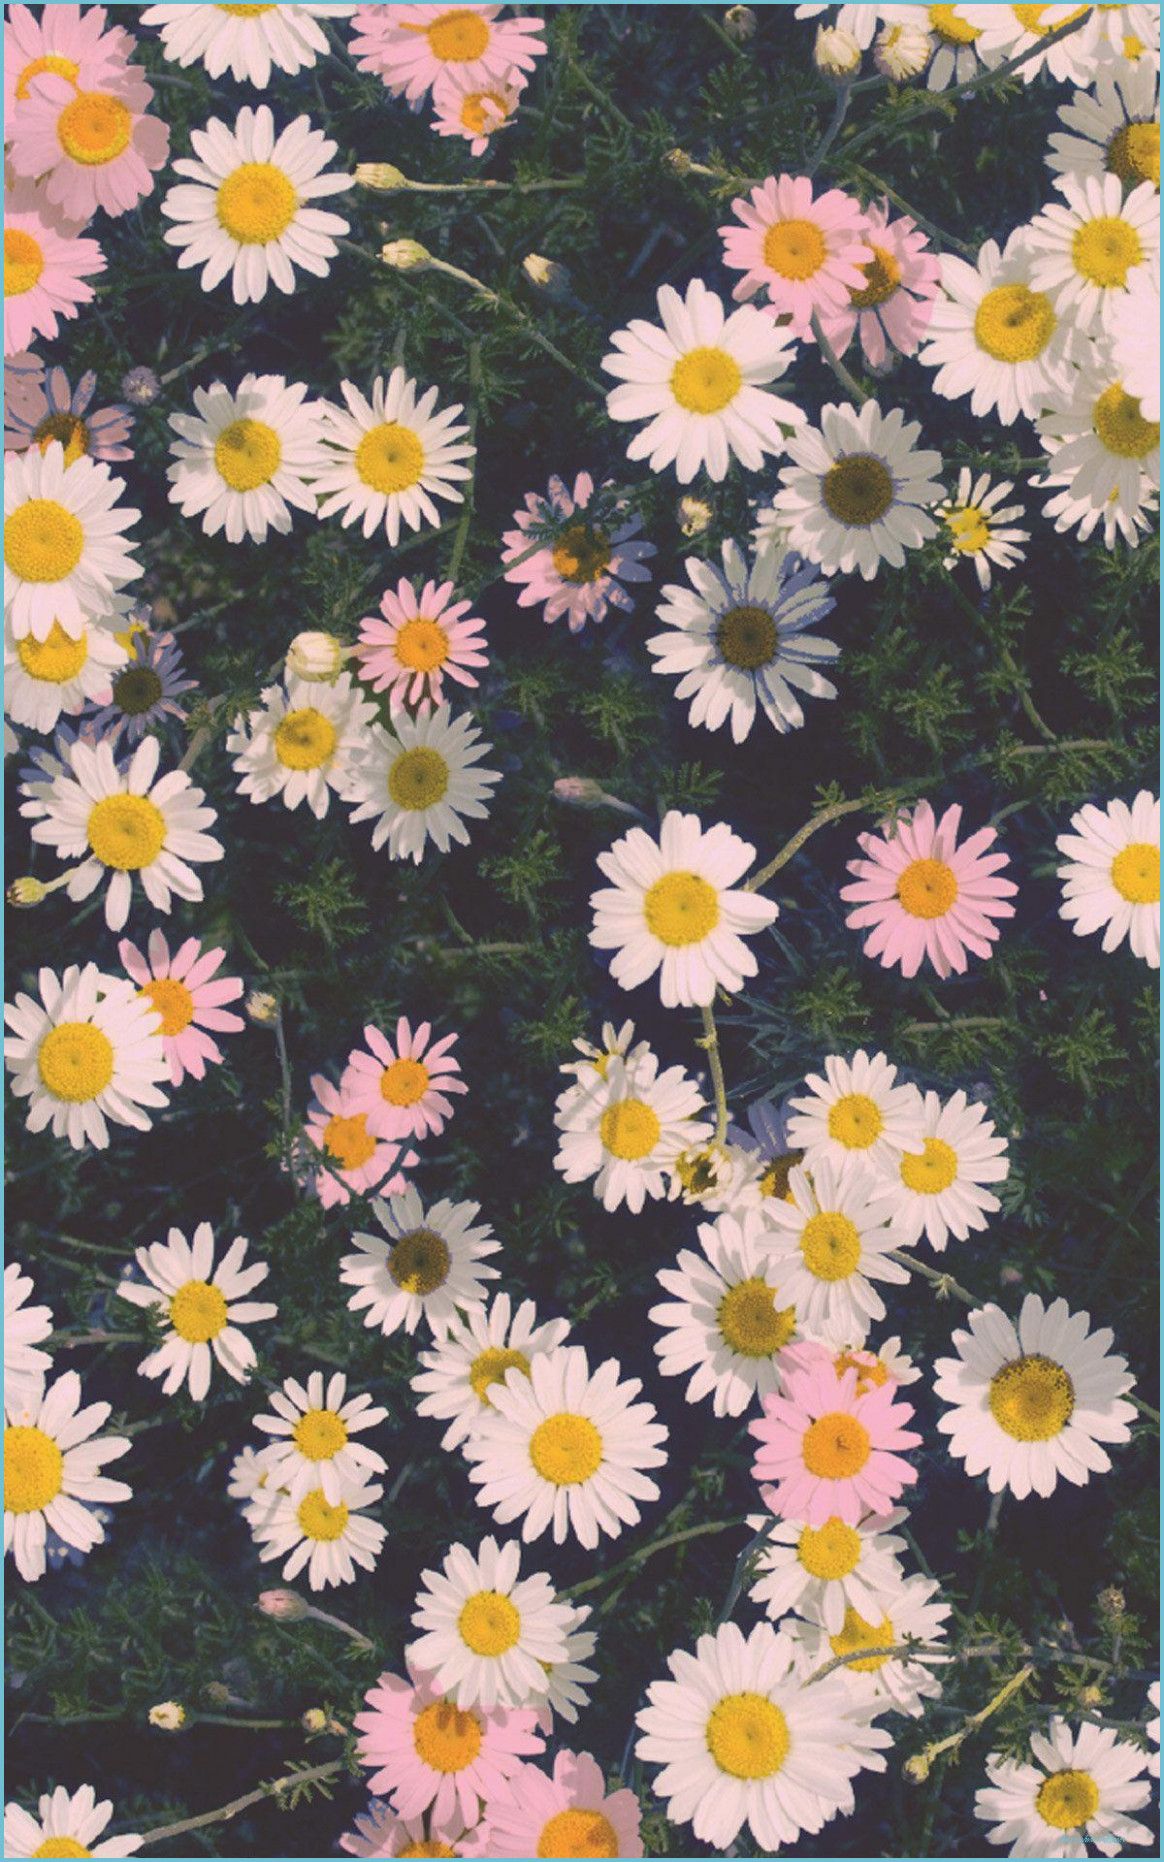 10k Flower iPhone X Wallpaper iphone wallpaper